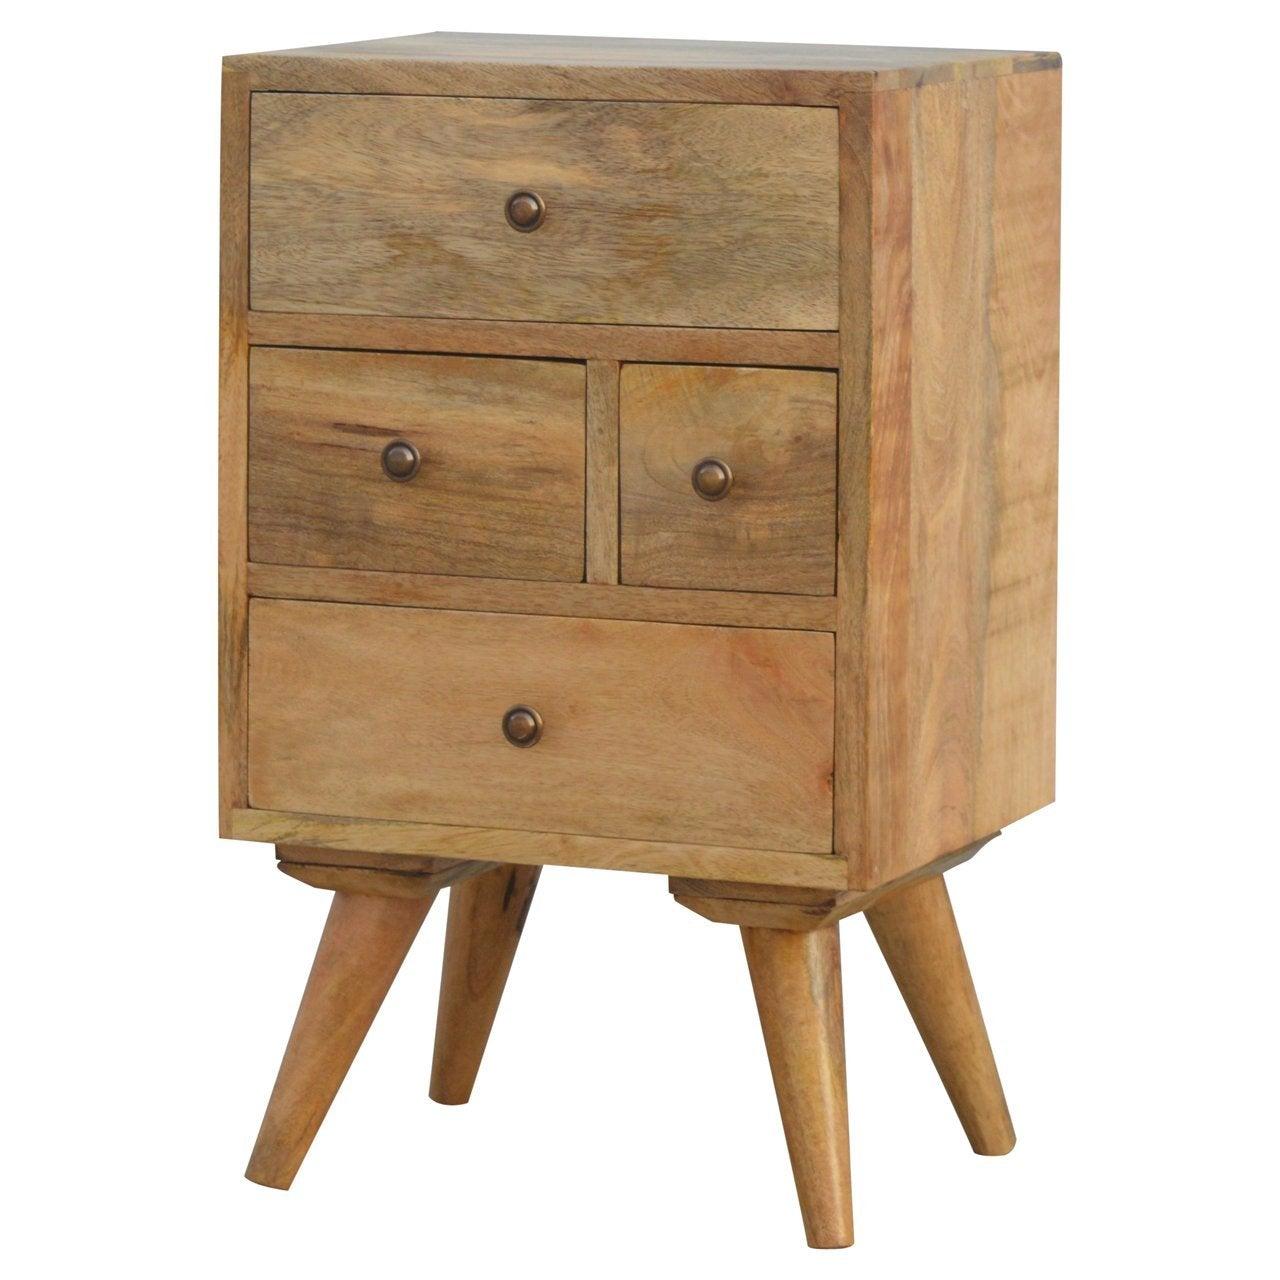 Nordic style 4 drawer multi bedside table - crimblefest furniture - image 4